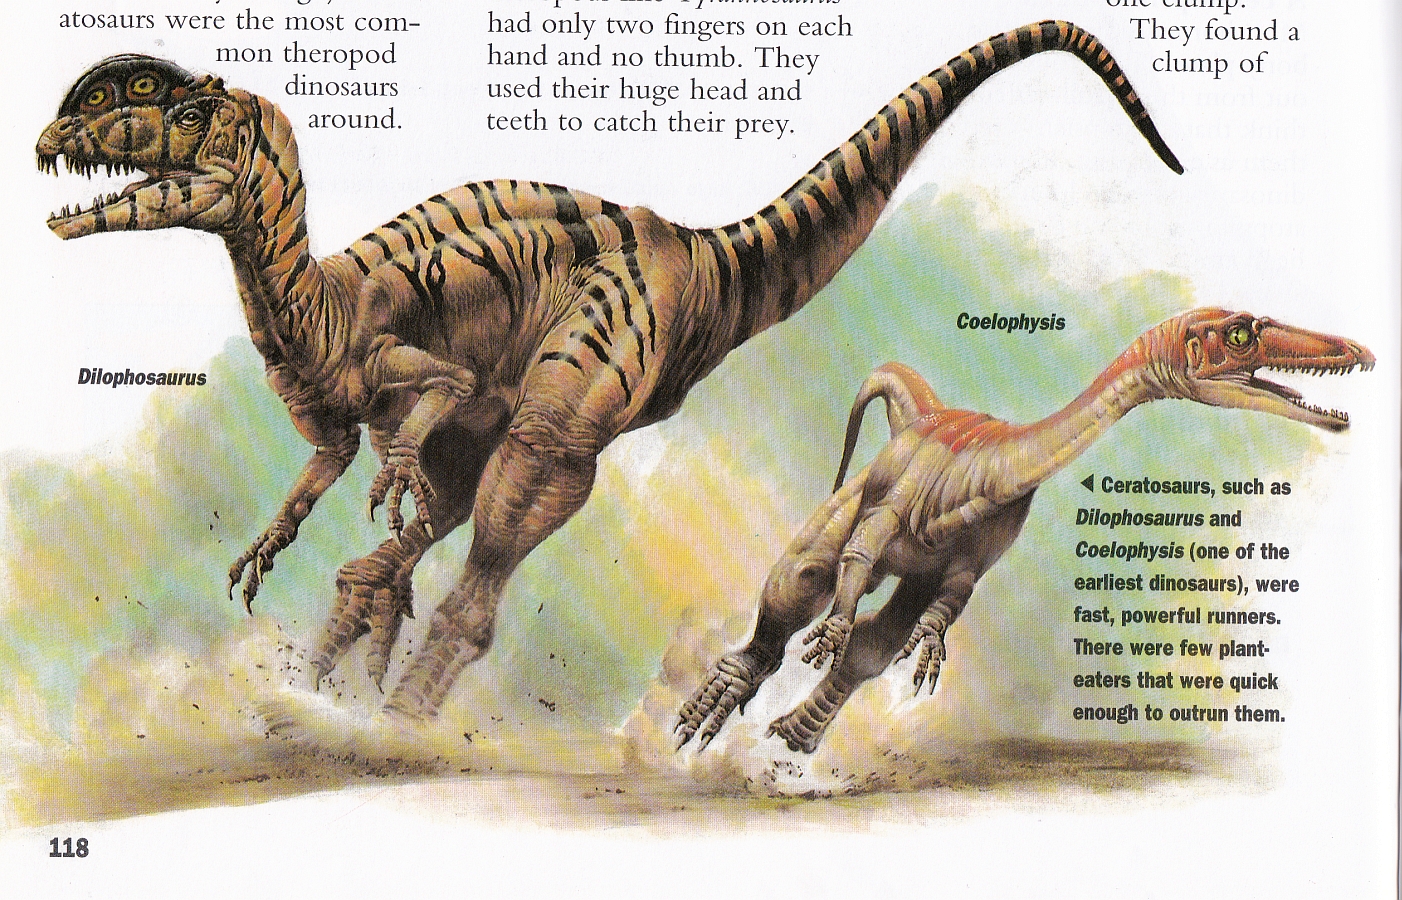 Ceratosaurs, sort of